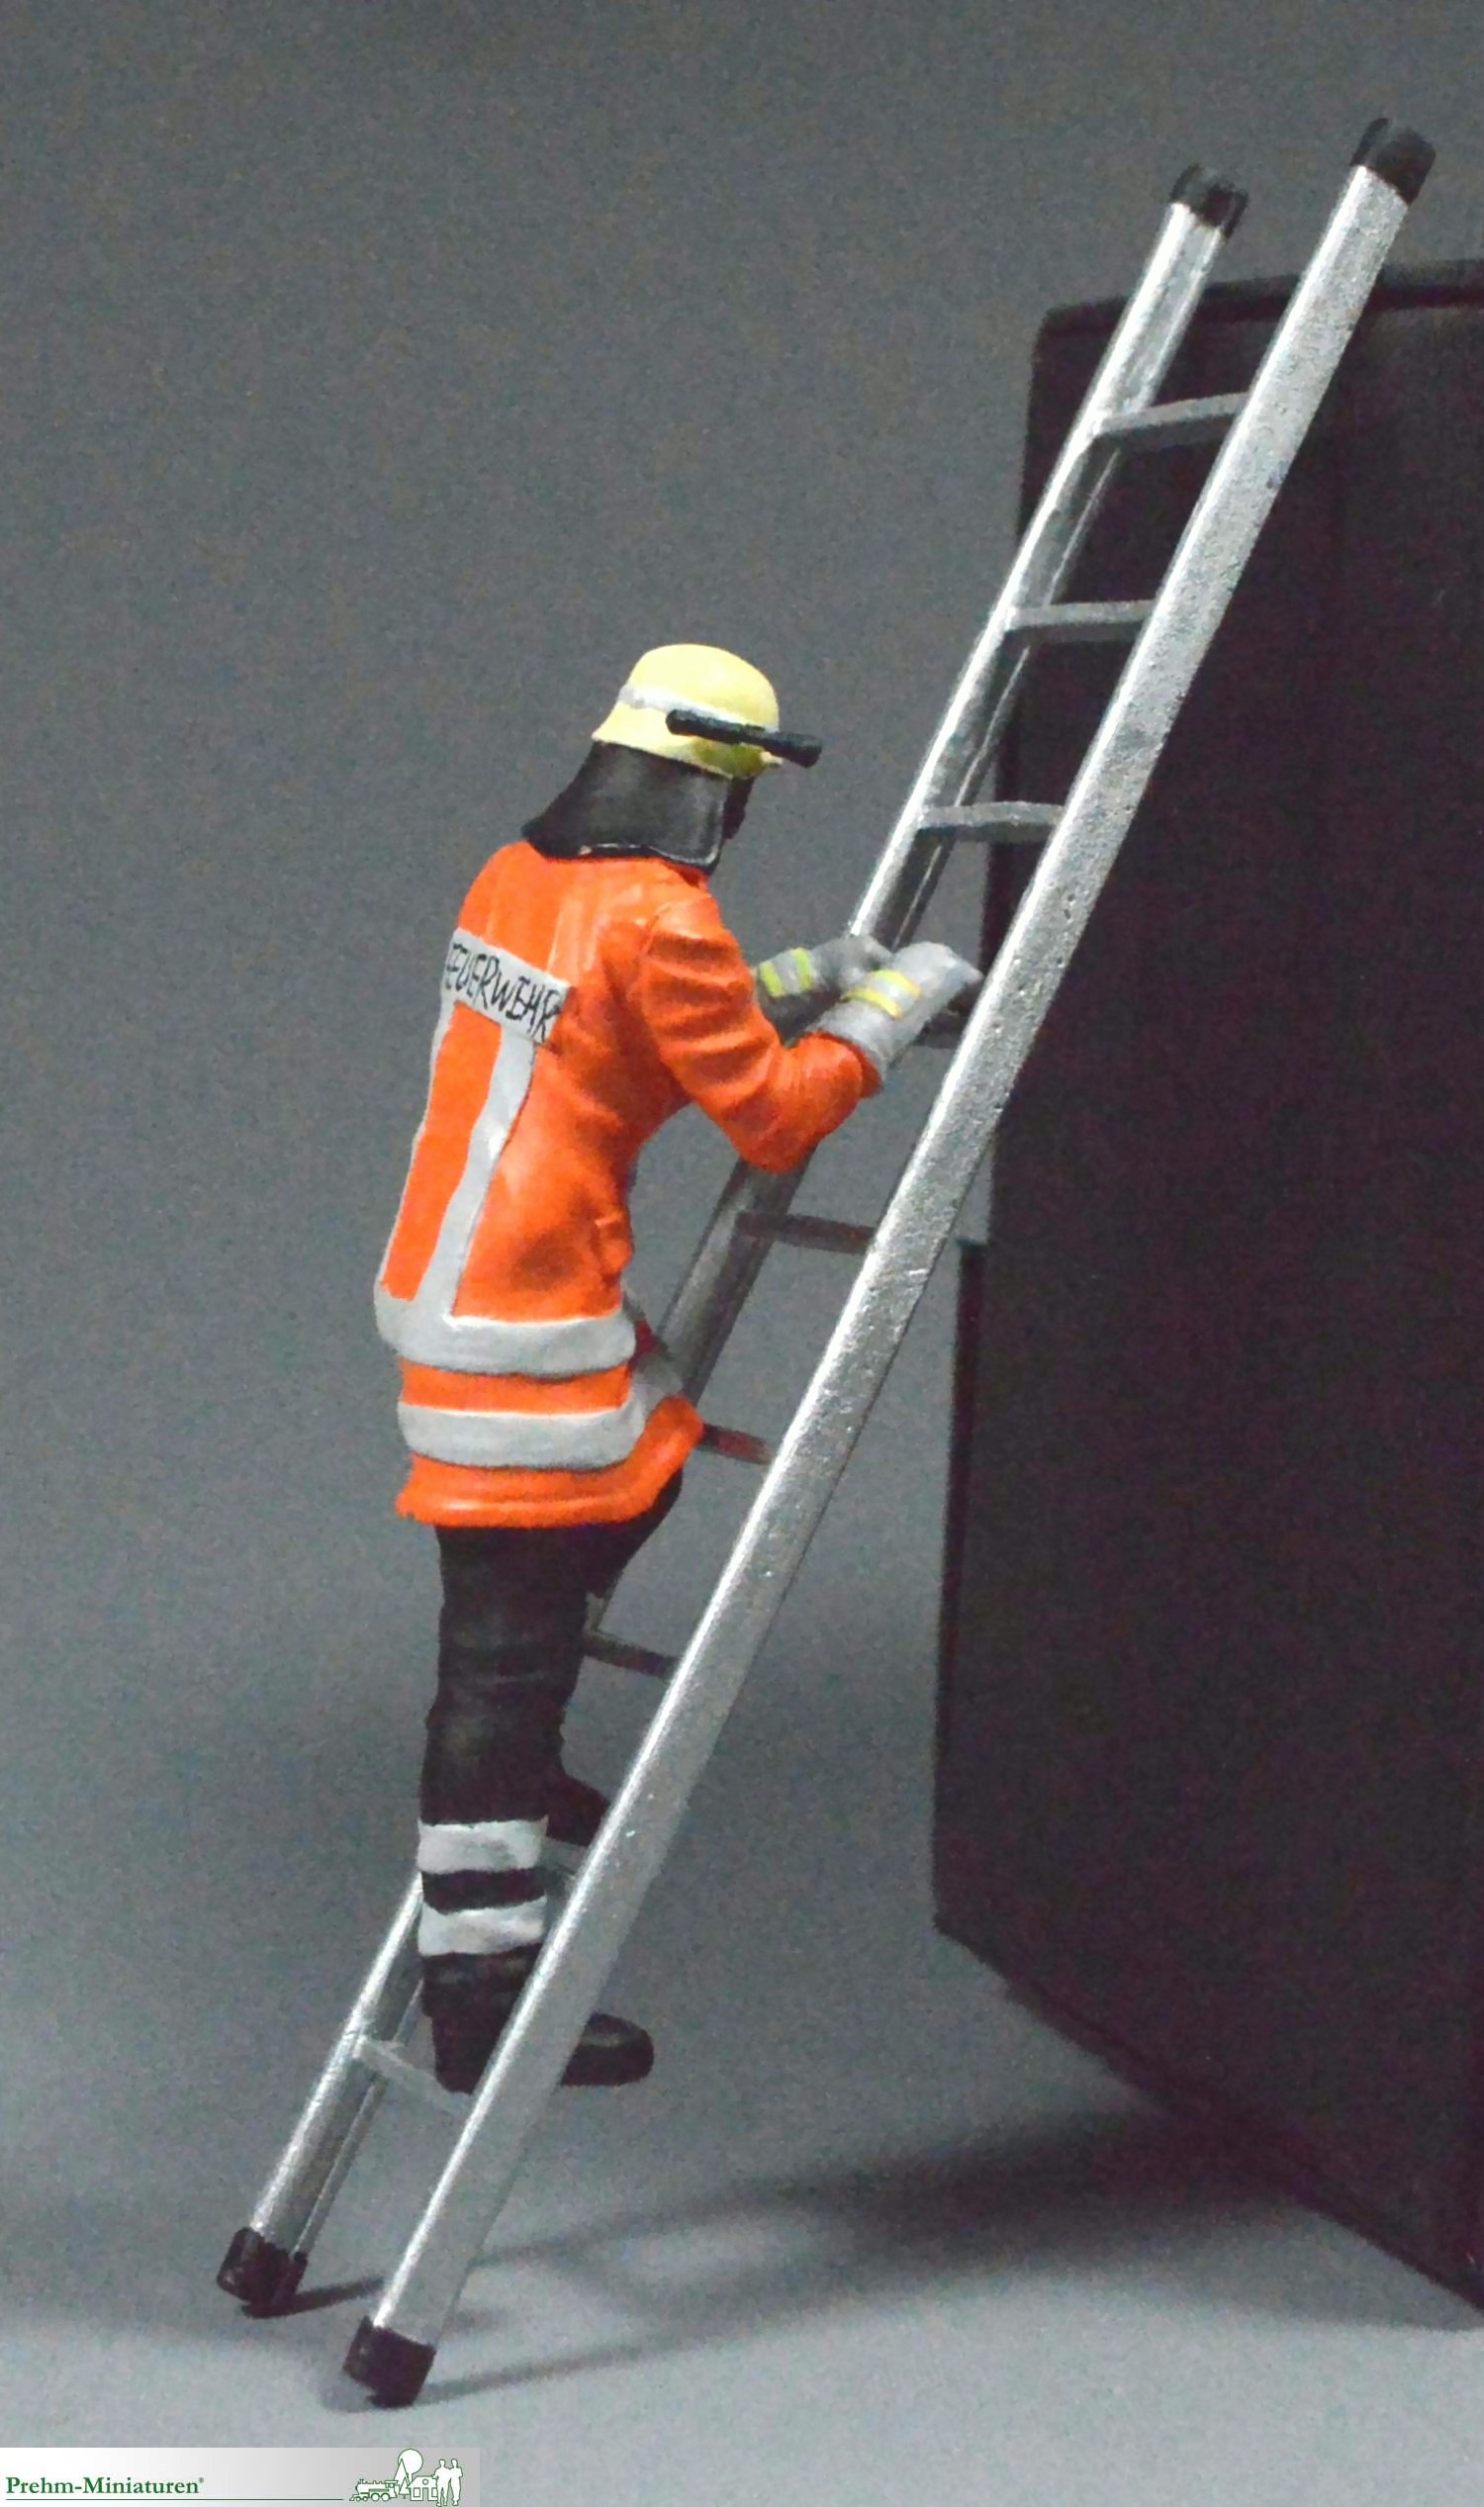 500205 - Feuerwehrmann auf Leiter